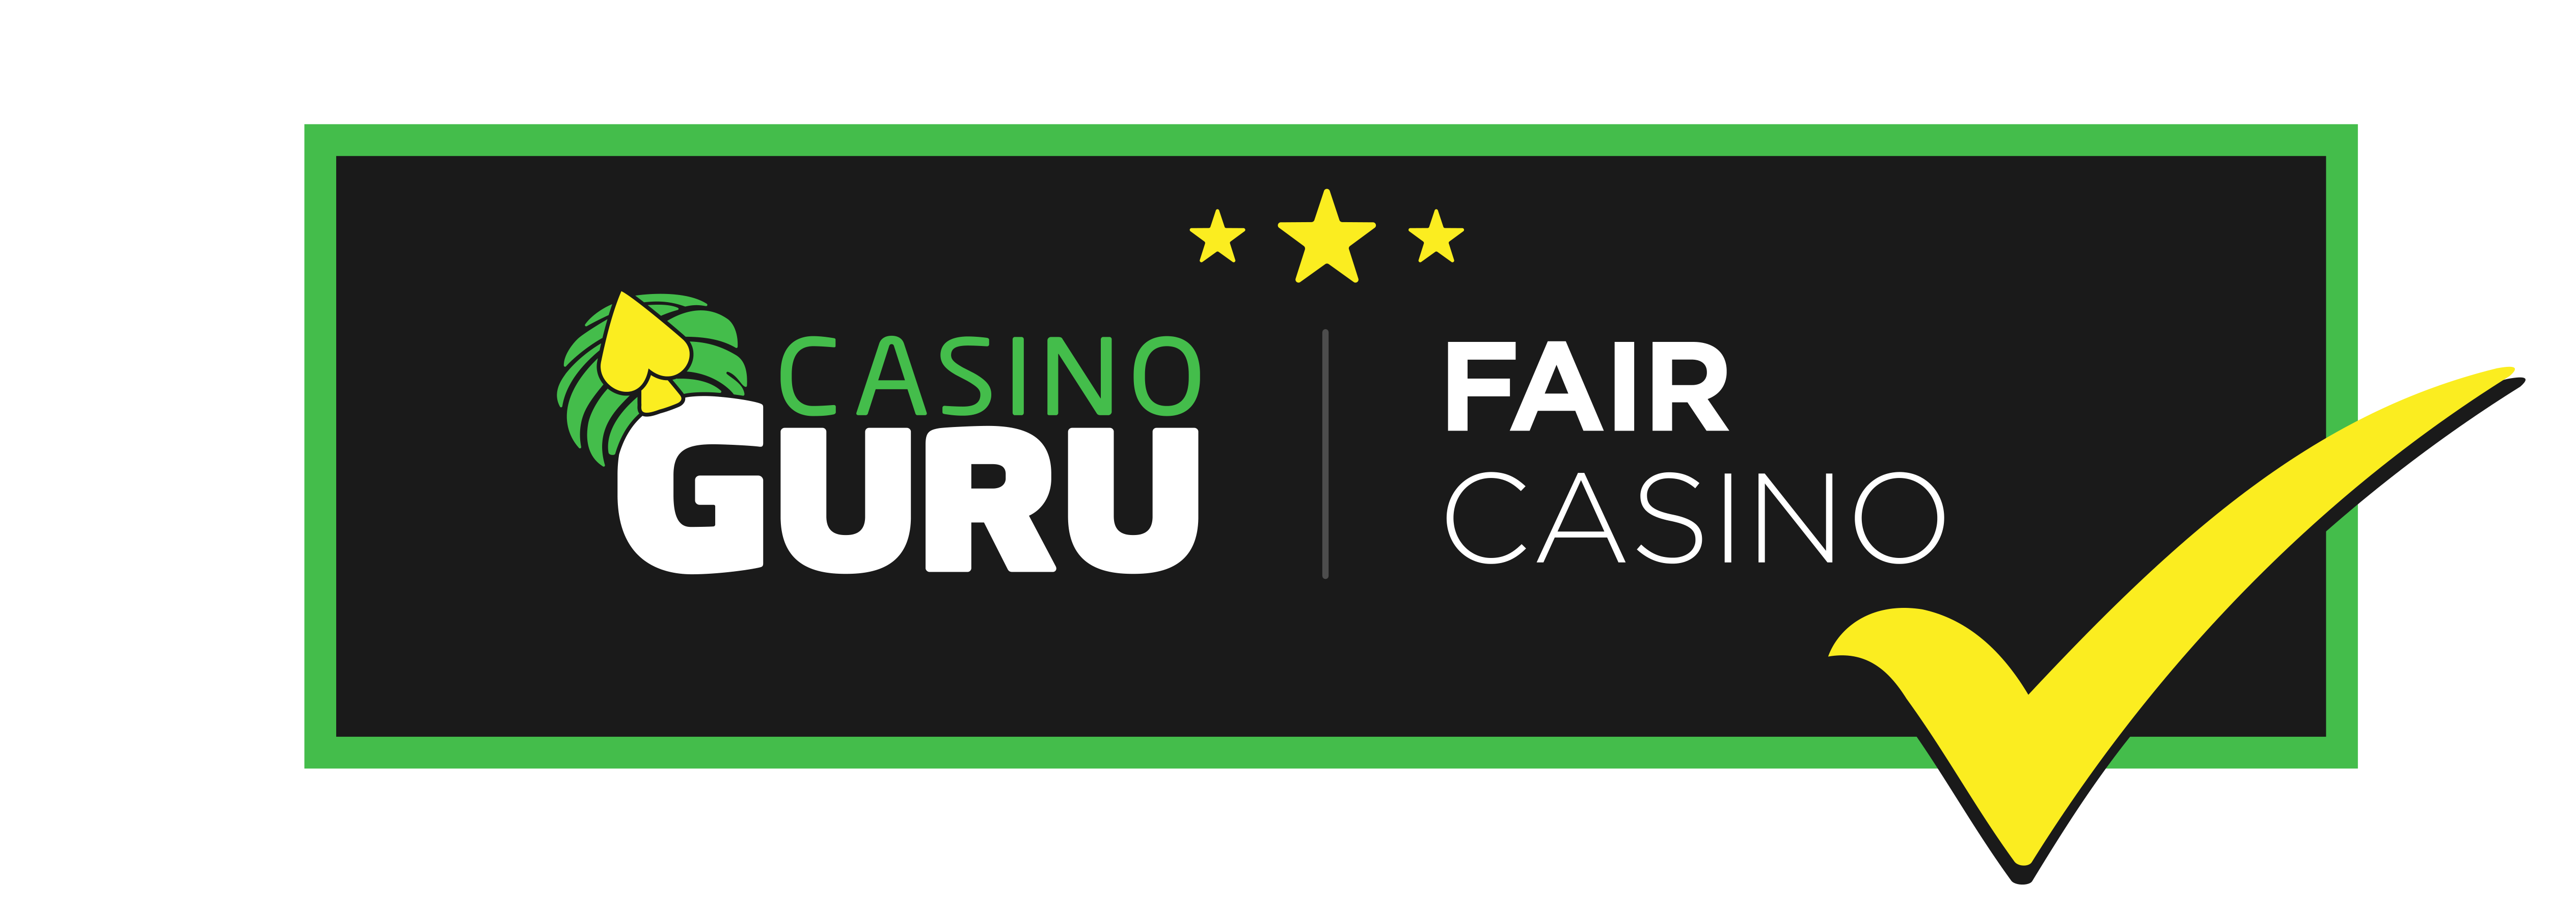 certificate Fair Casino from casino Guru